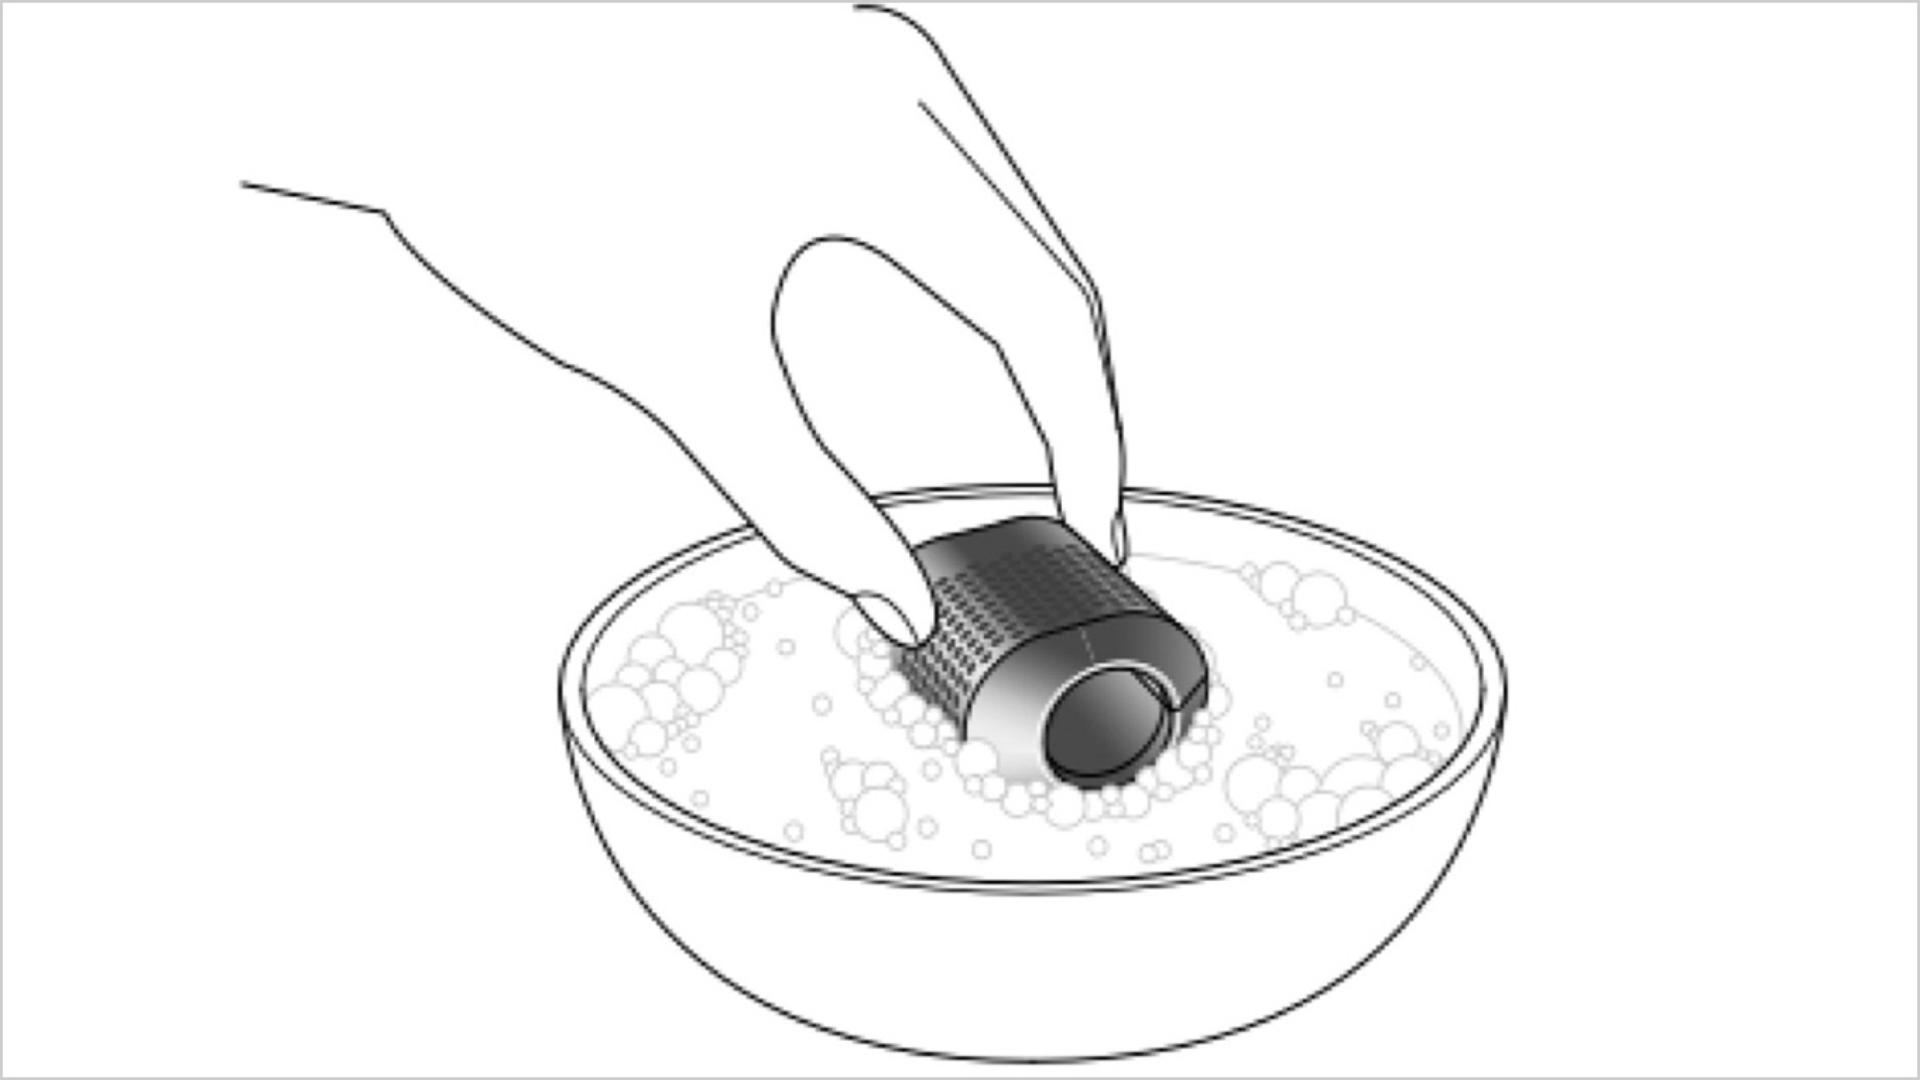 رسم توضيحي لفلتر يتم غسله في وعاء ماء.